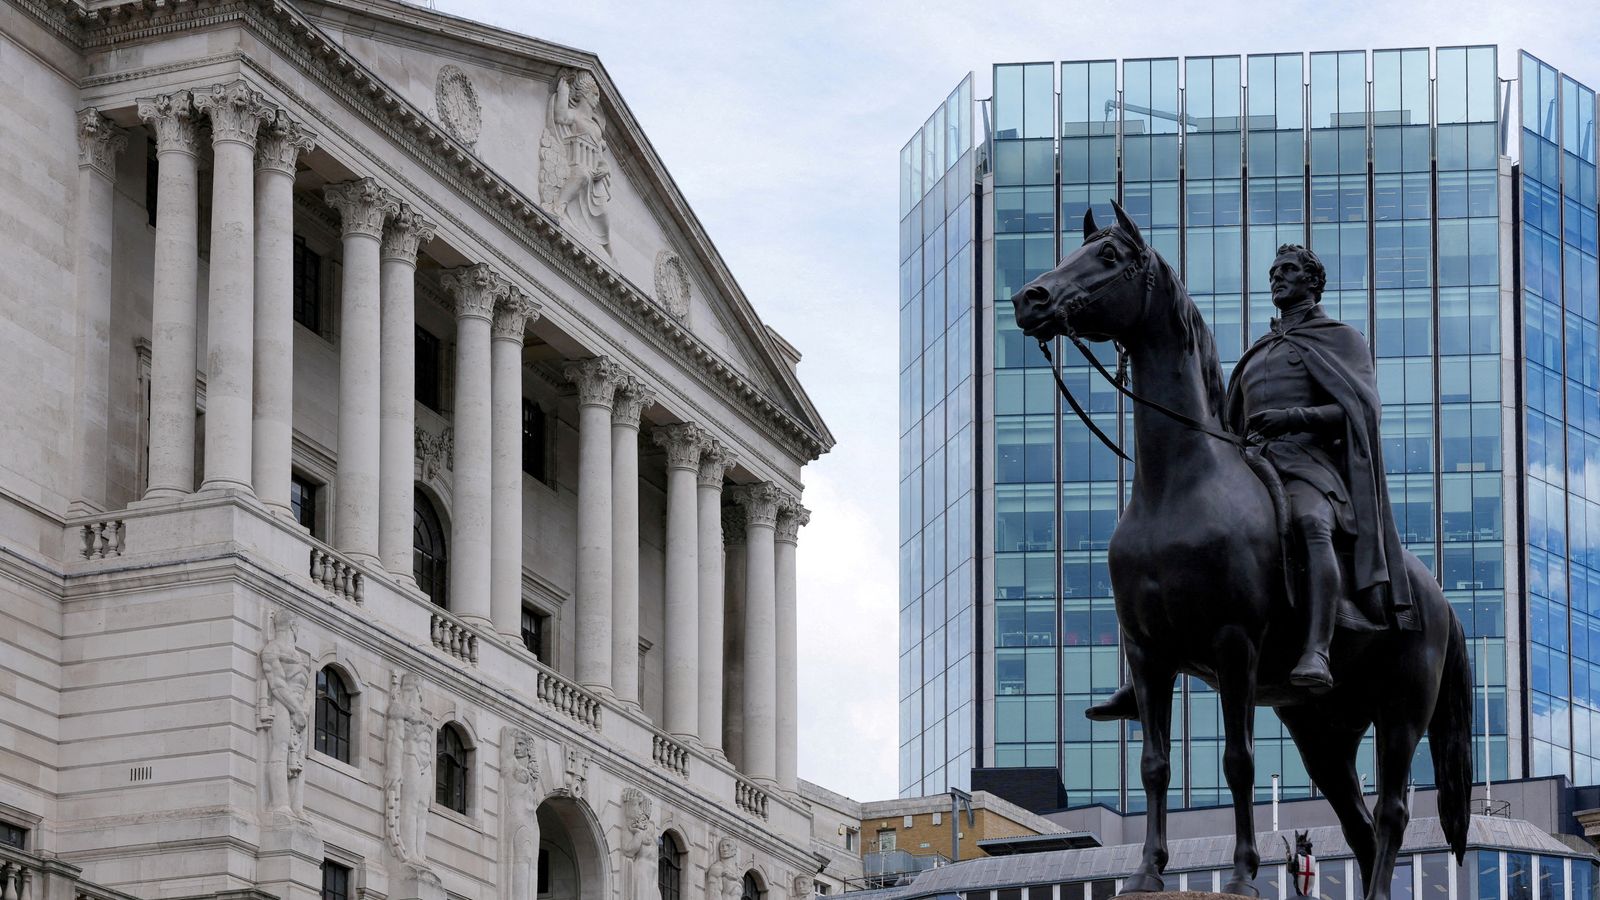 La Banque d’Angleterre cesse d’acheter des obligations après avoir dépensé 19,3 milliards de livres sterling |  Actualité économique